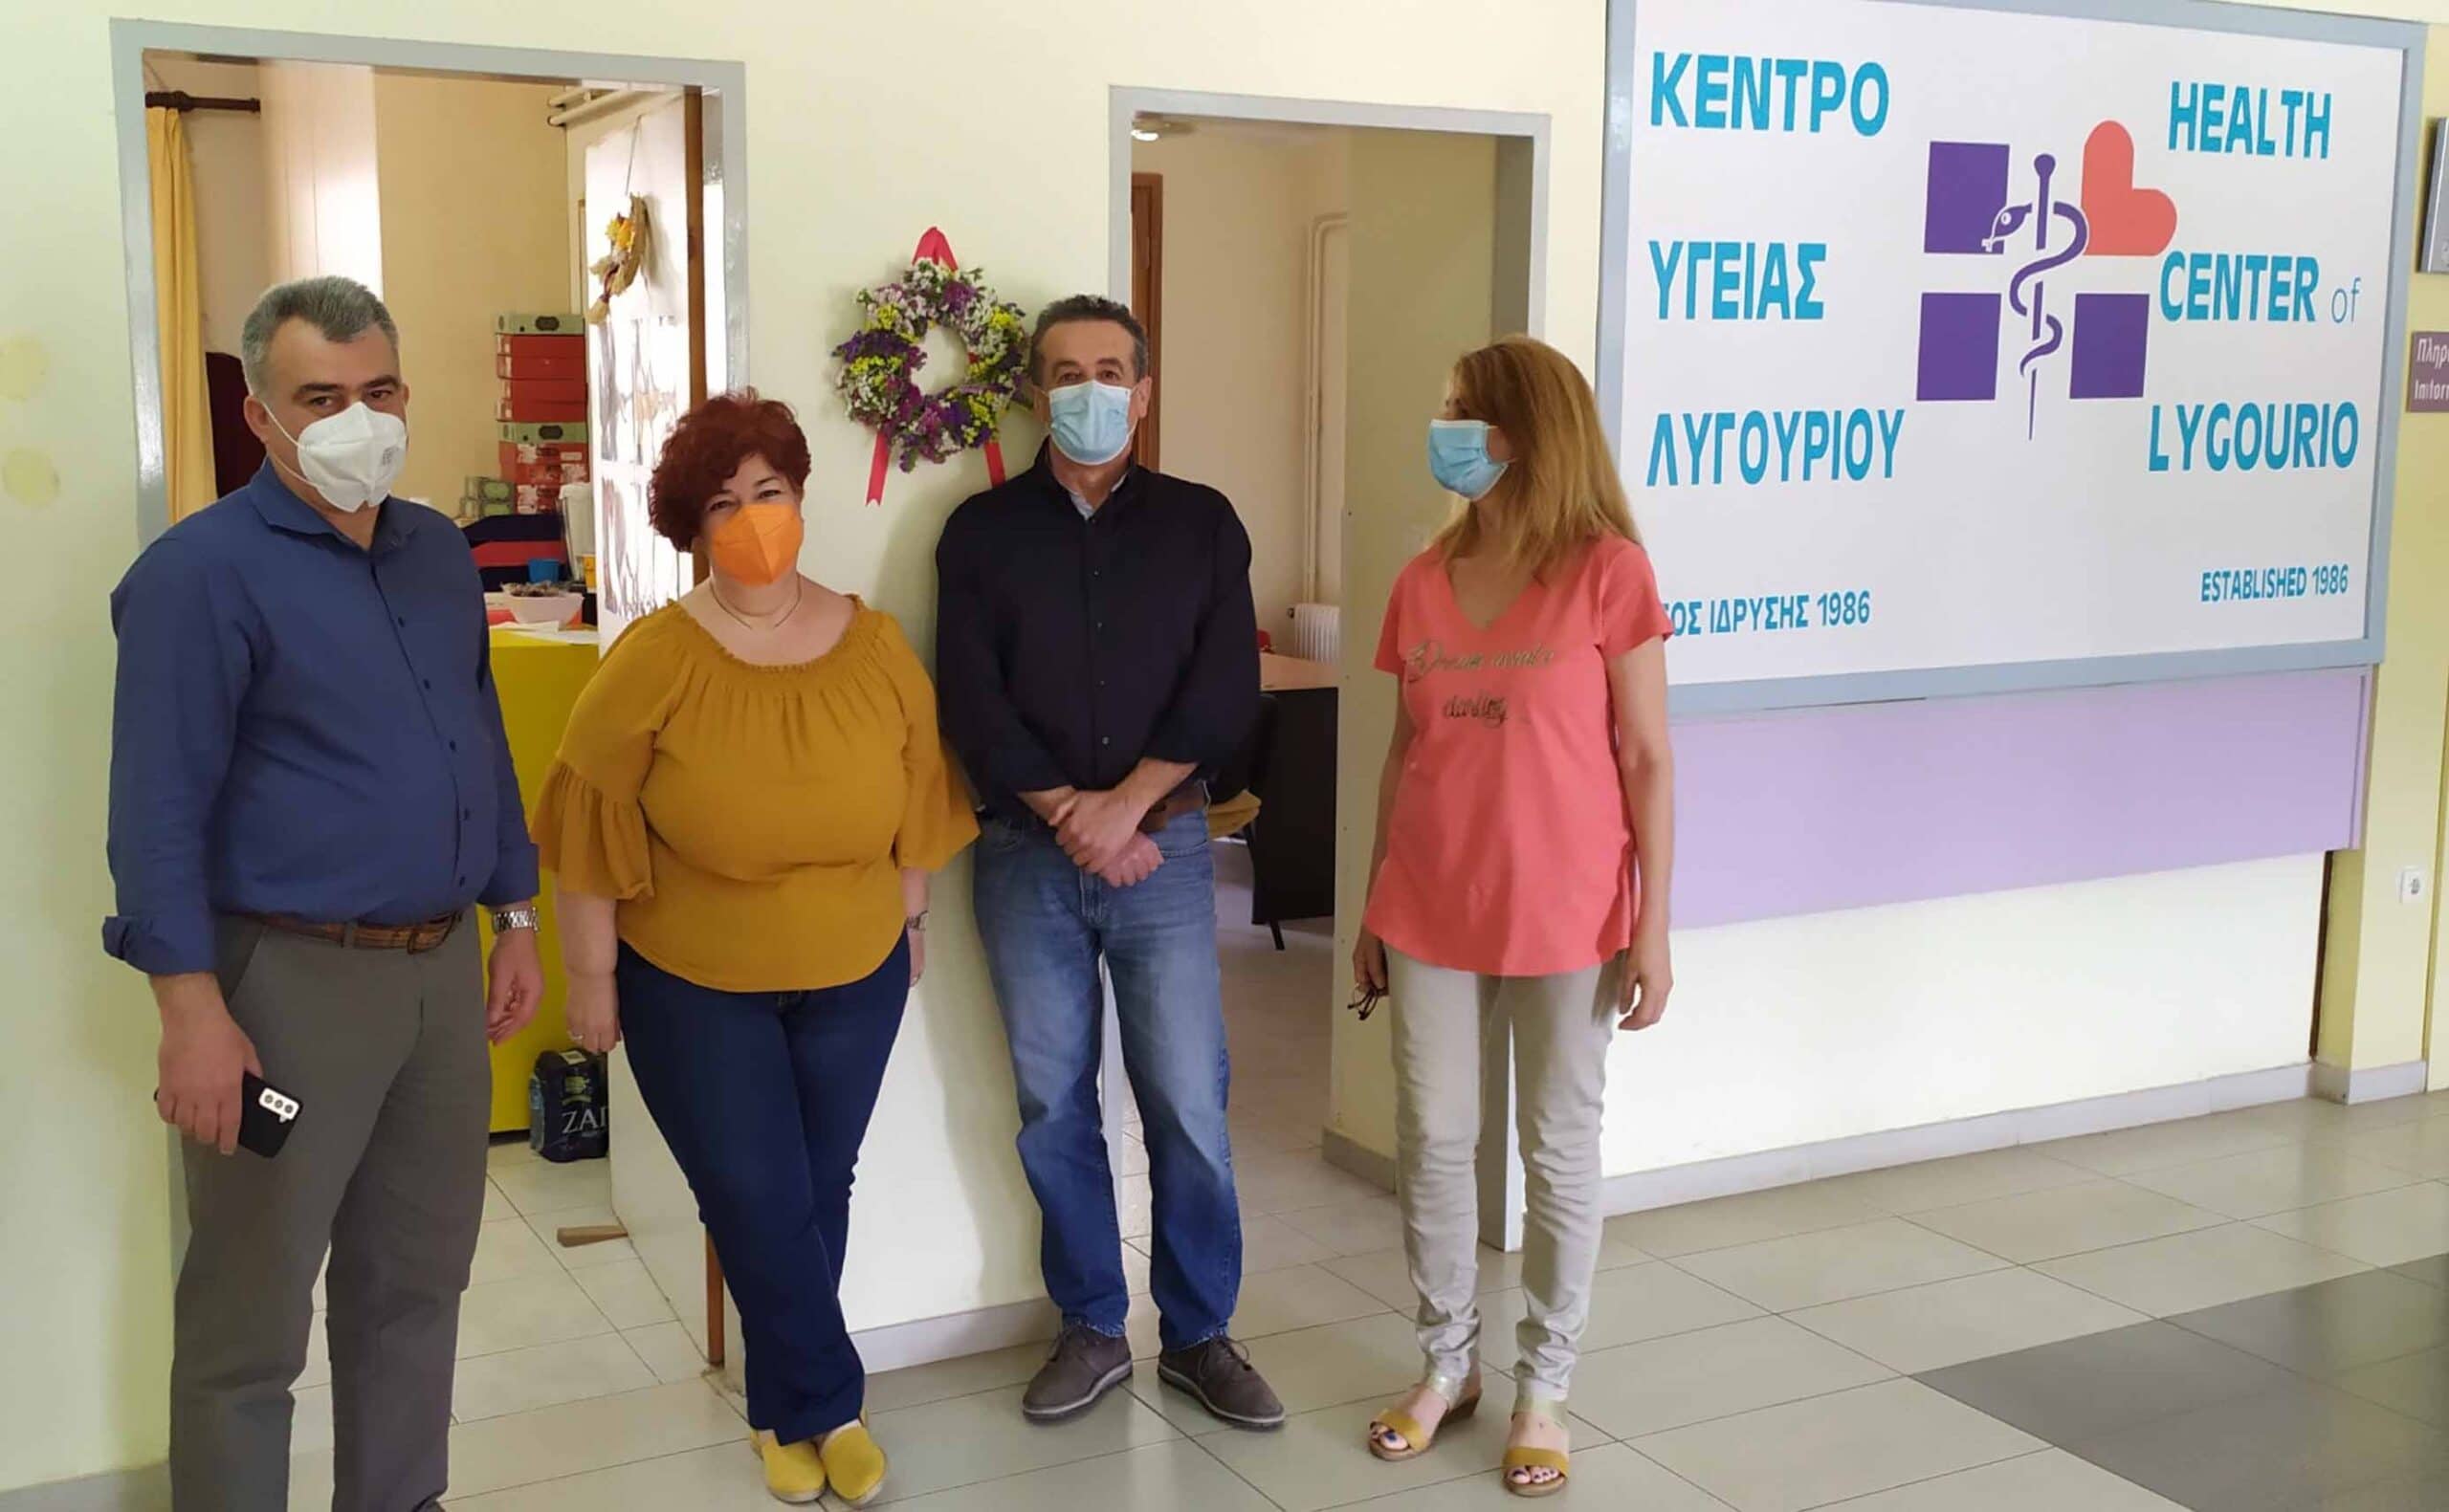 Κέντρα Υγείας σε Ναύπλιο και Λυγουριό επισκέφθηκε ο Πουλάς